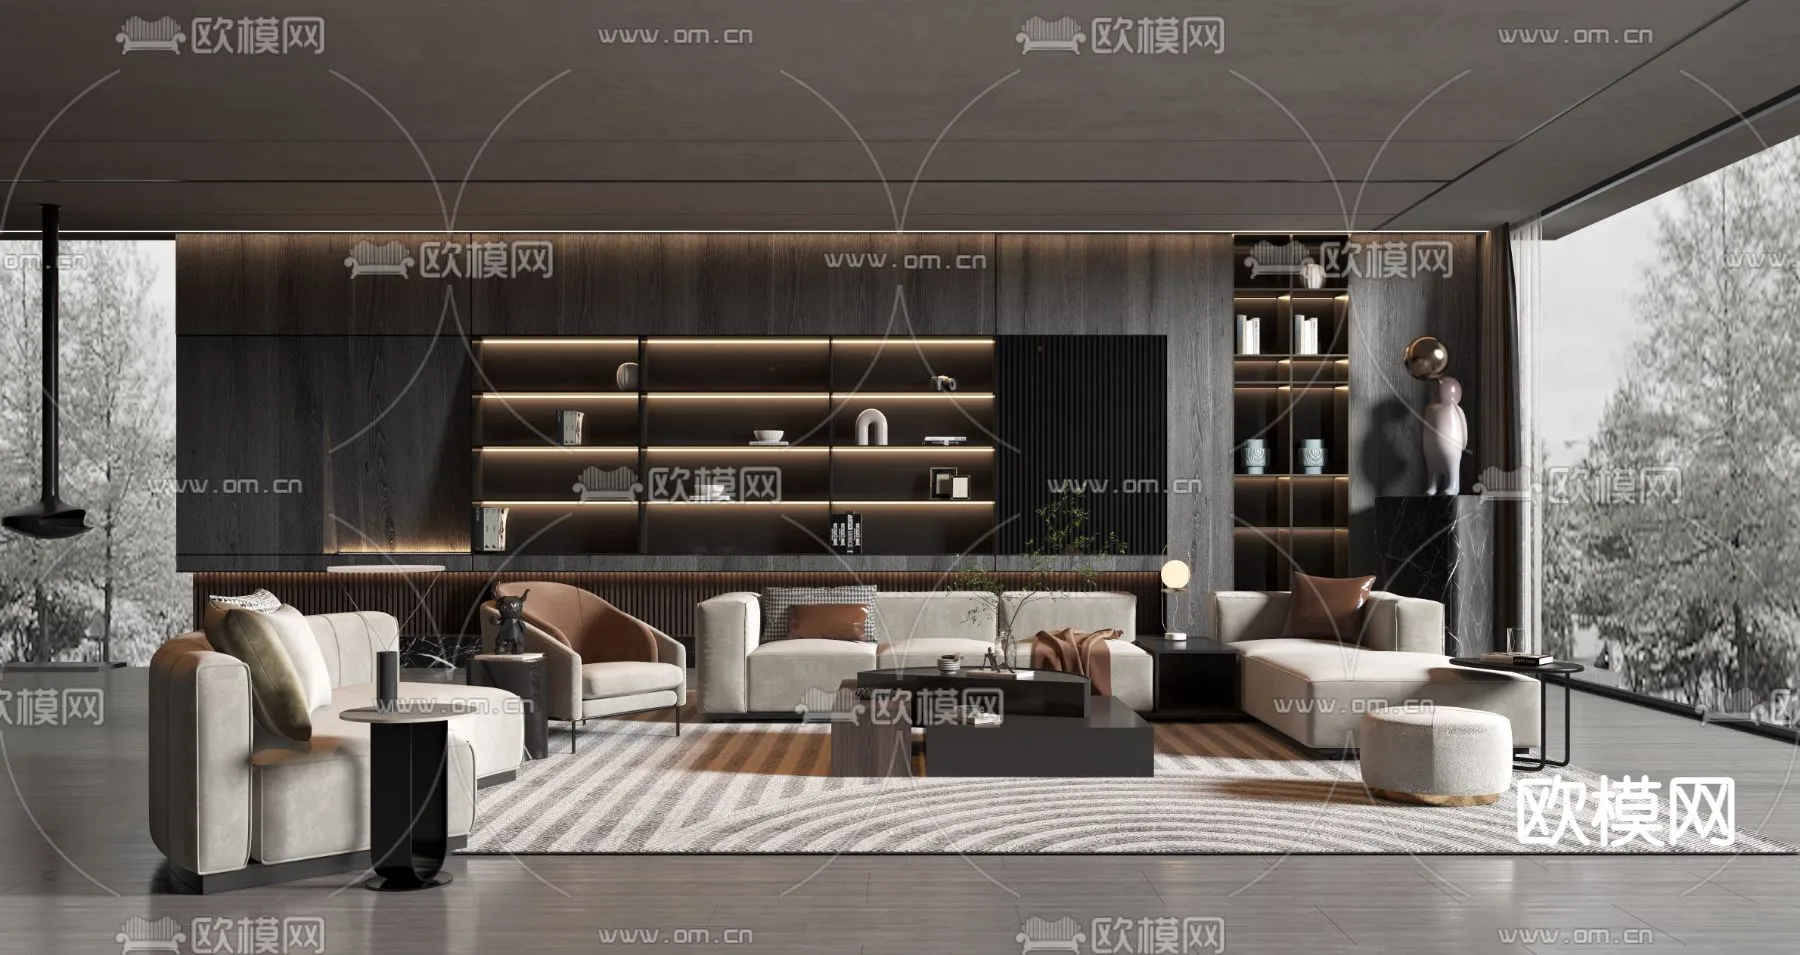 Living Room 3D Scenes – 0925